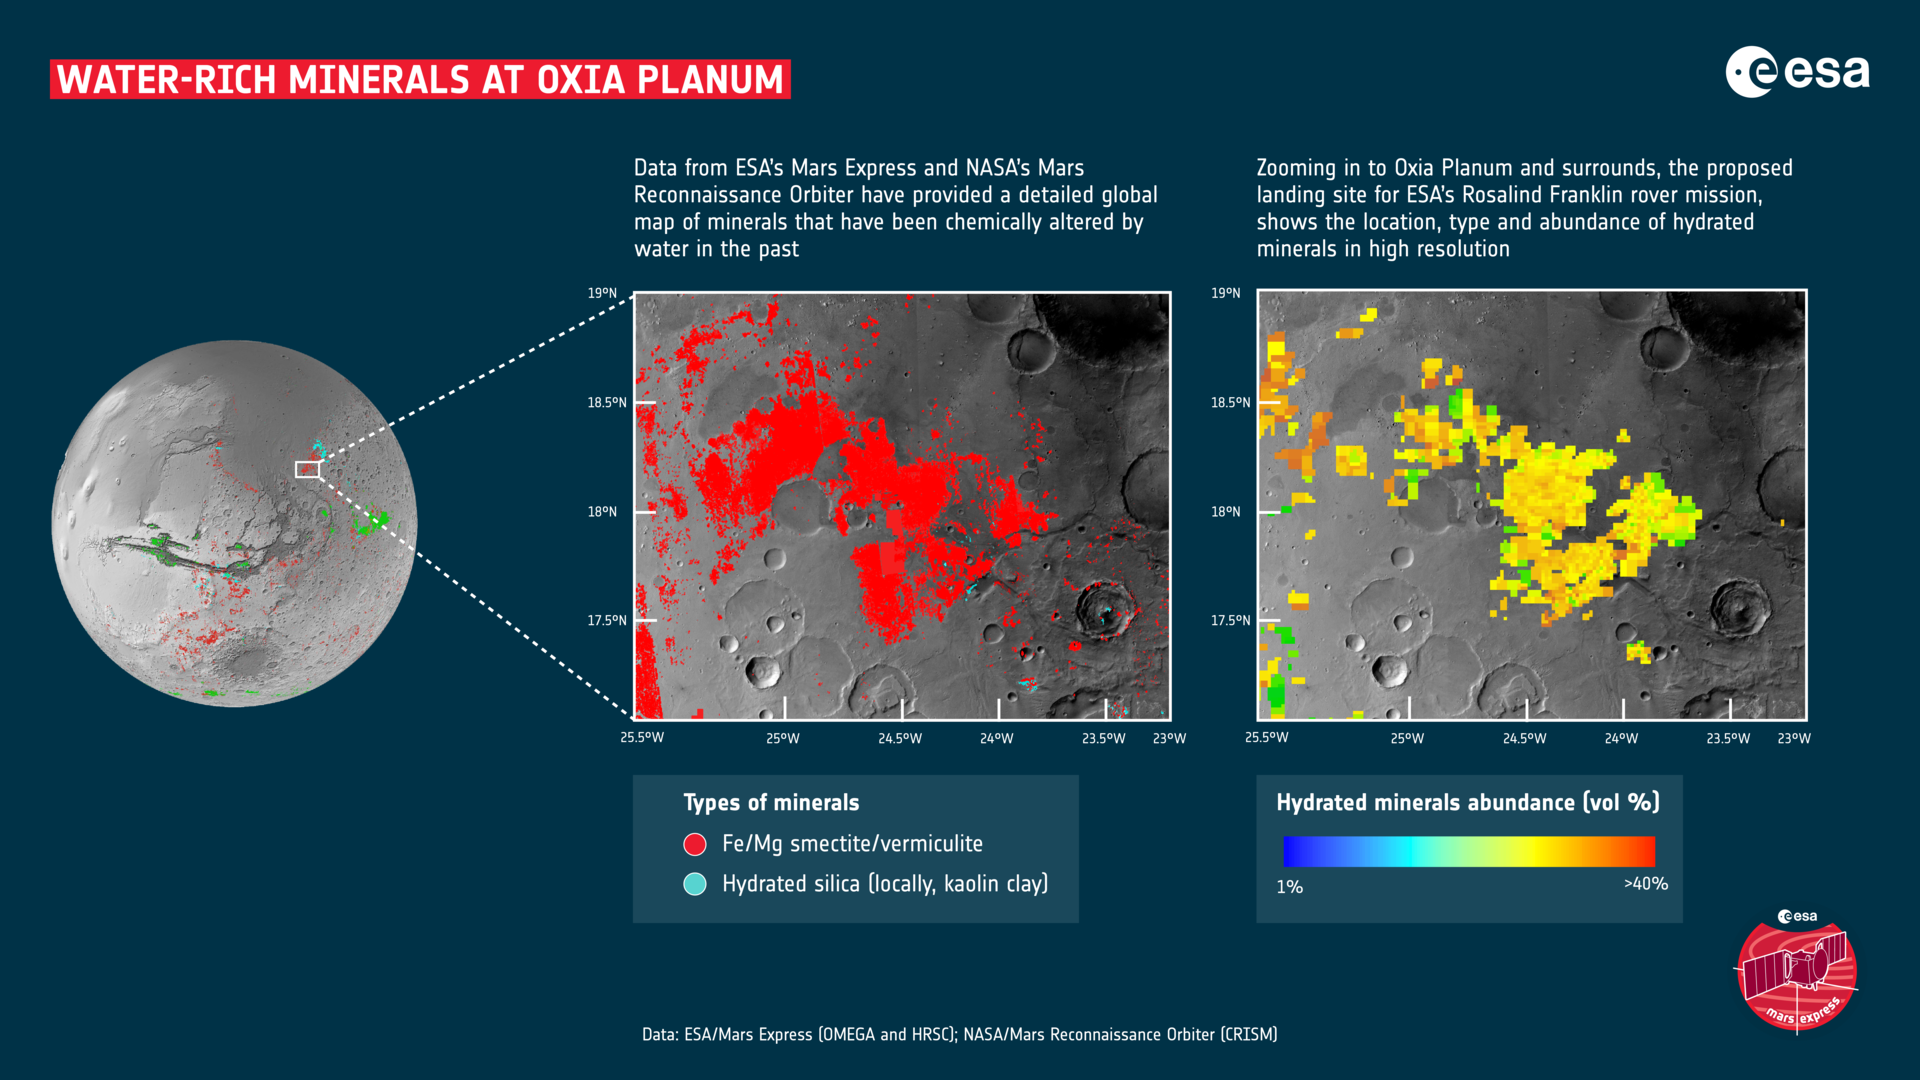 область Oxia Planum на Марсе